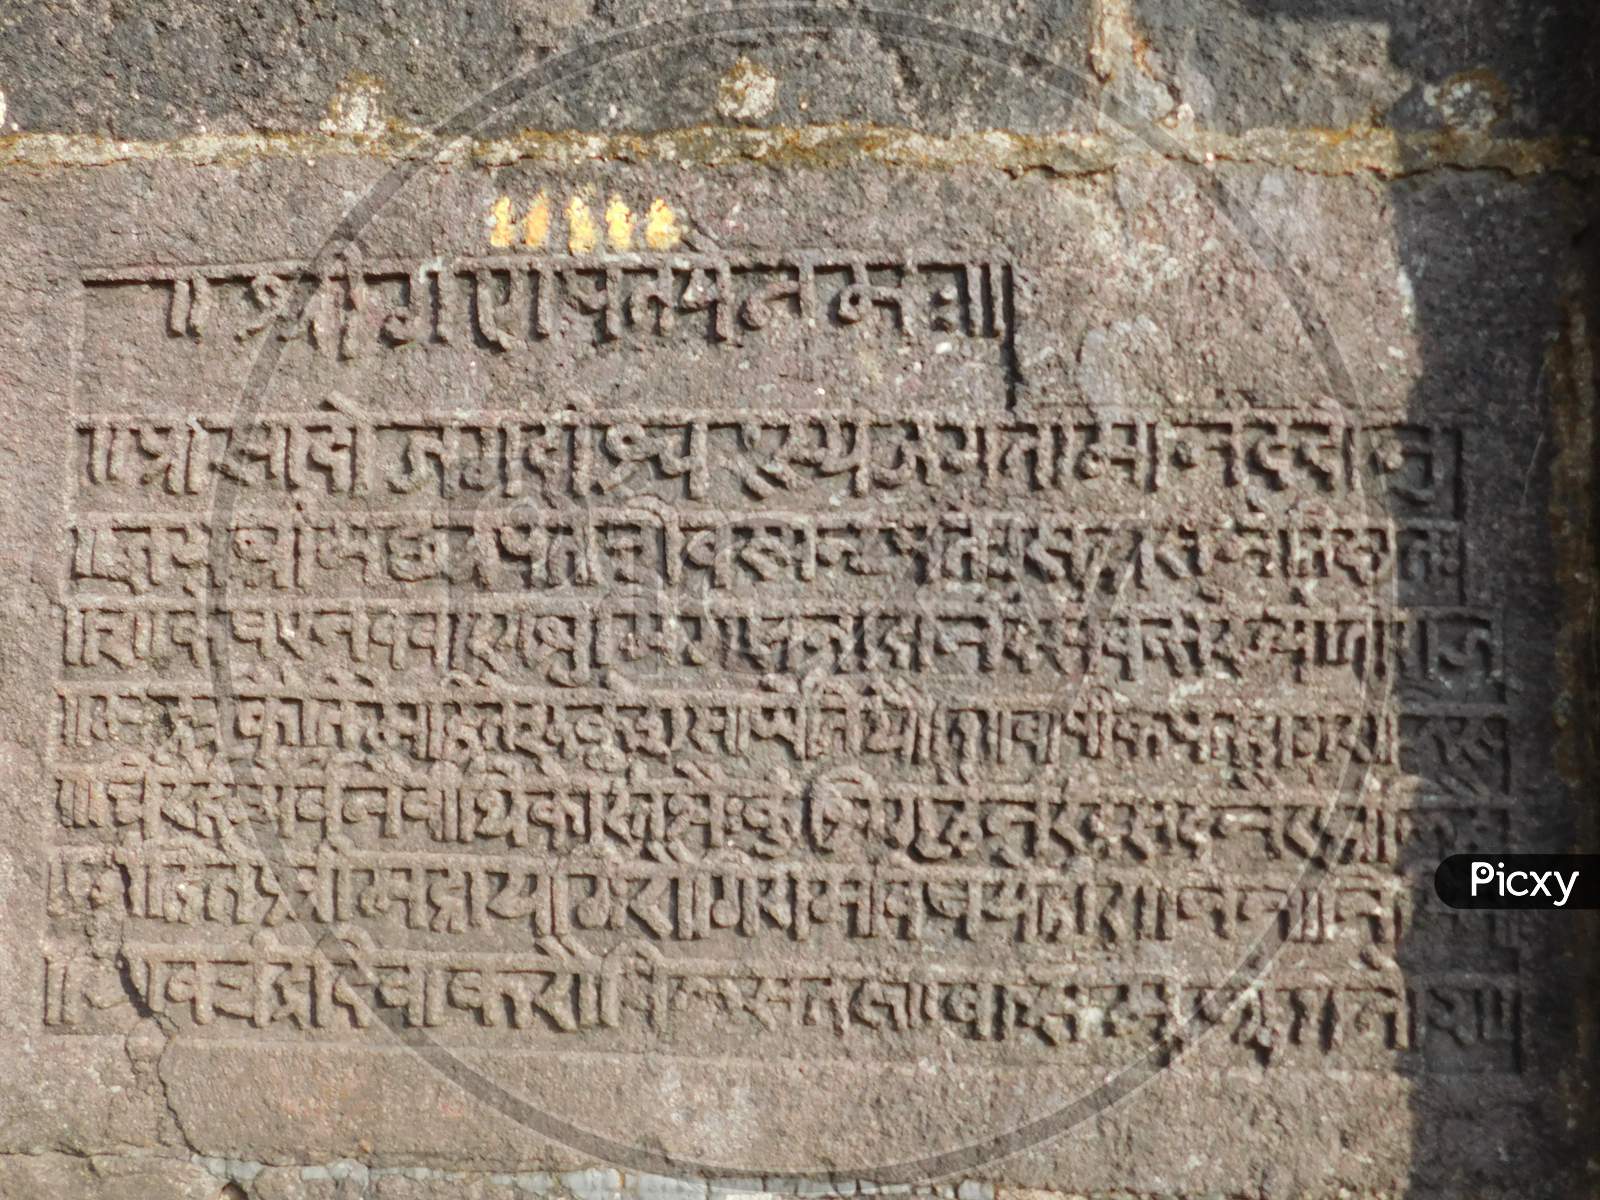 Stone carving at Chatrapati Shivaji Maharaj era